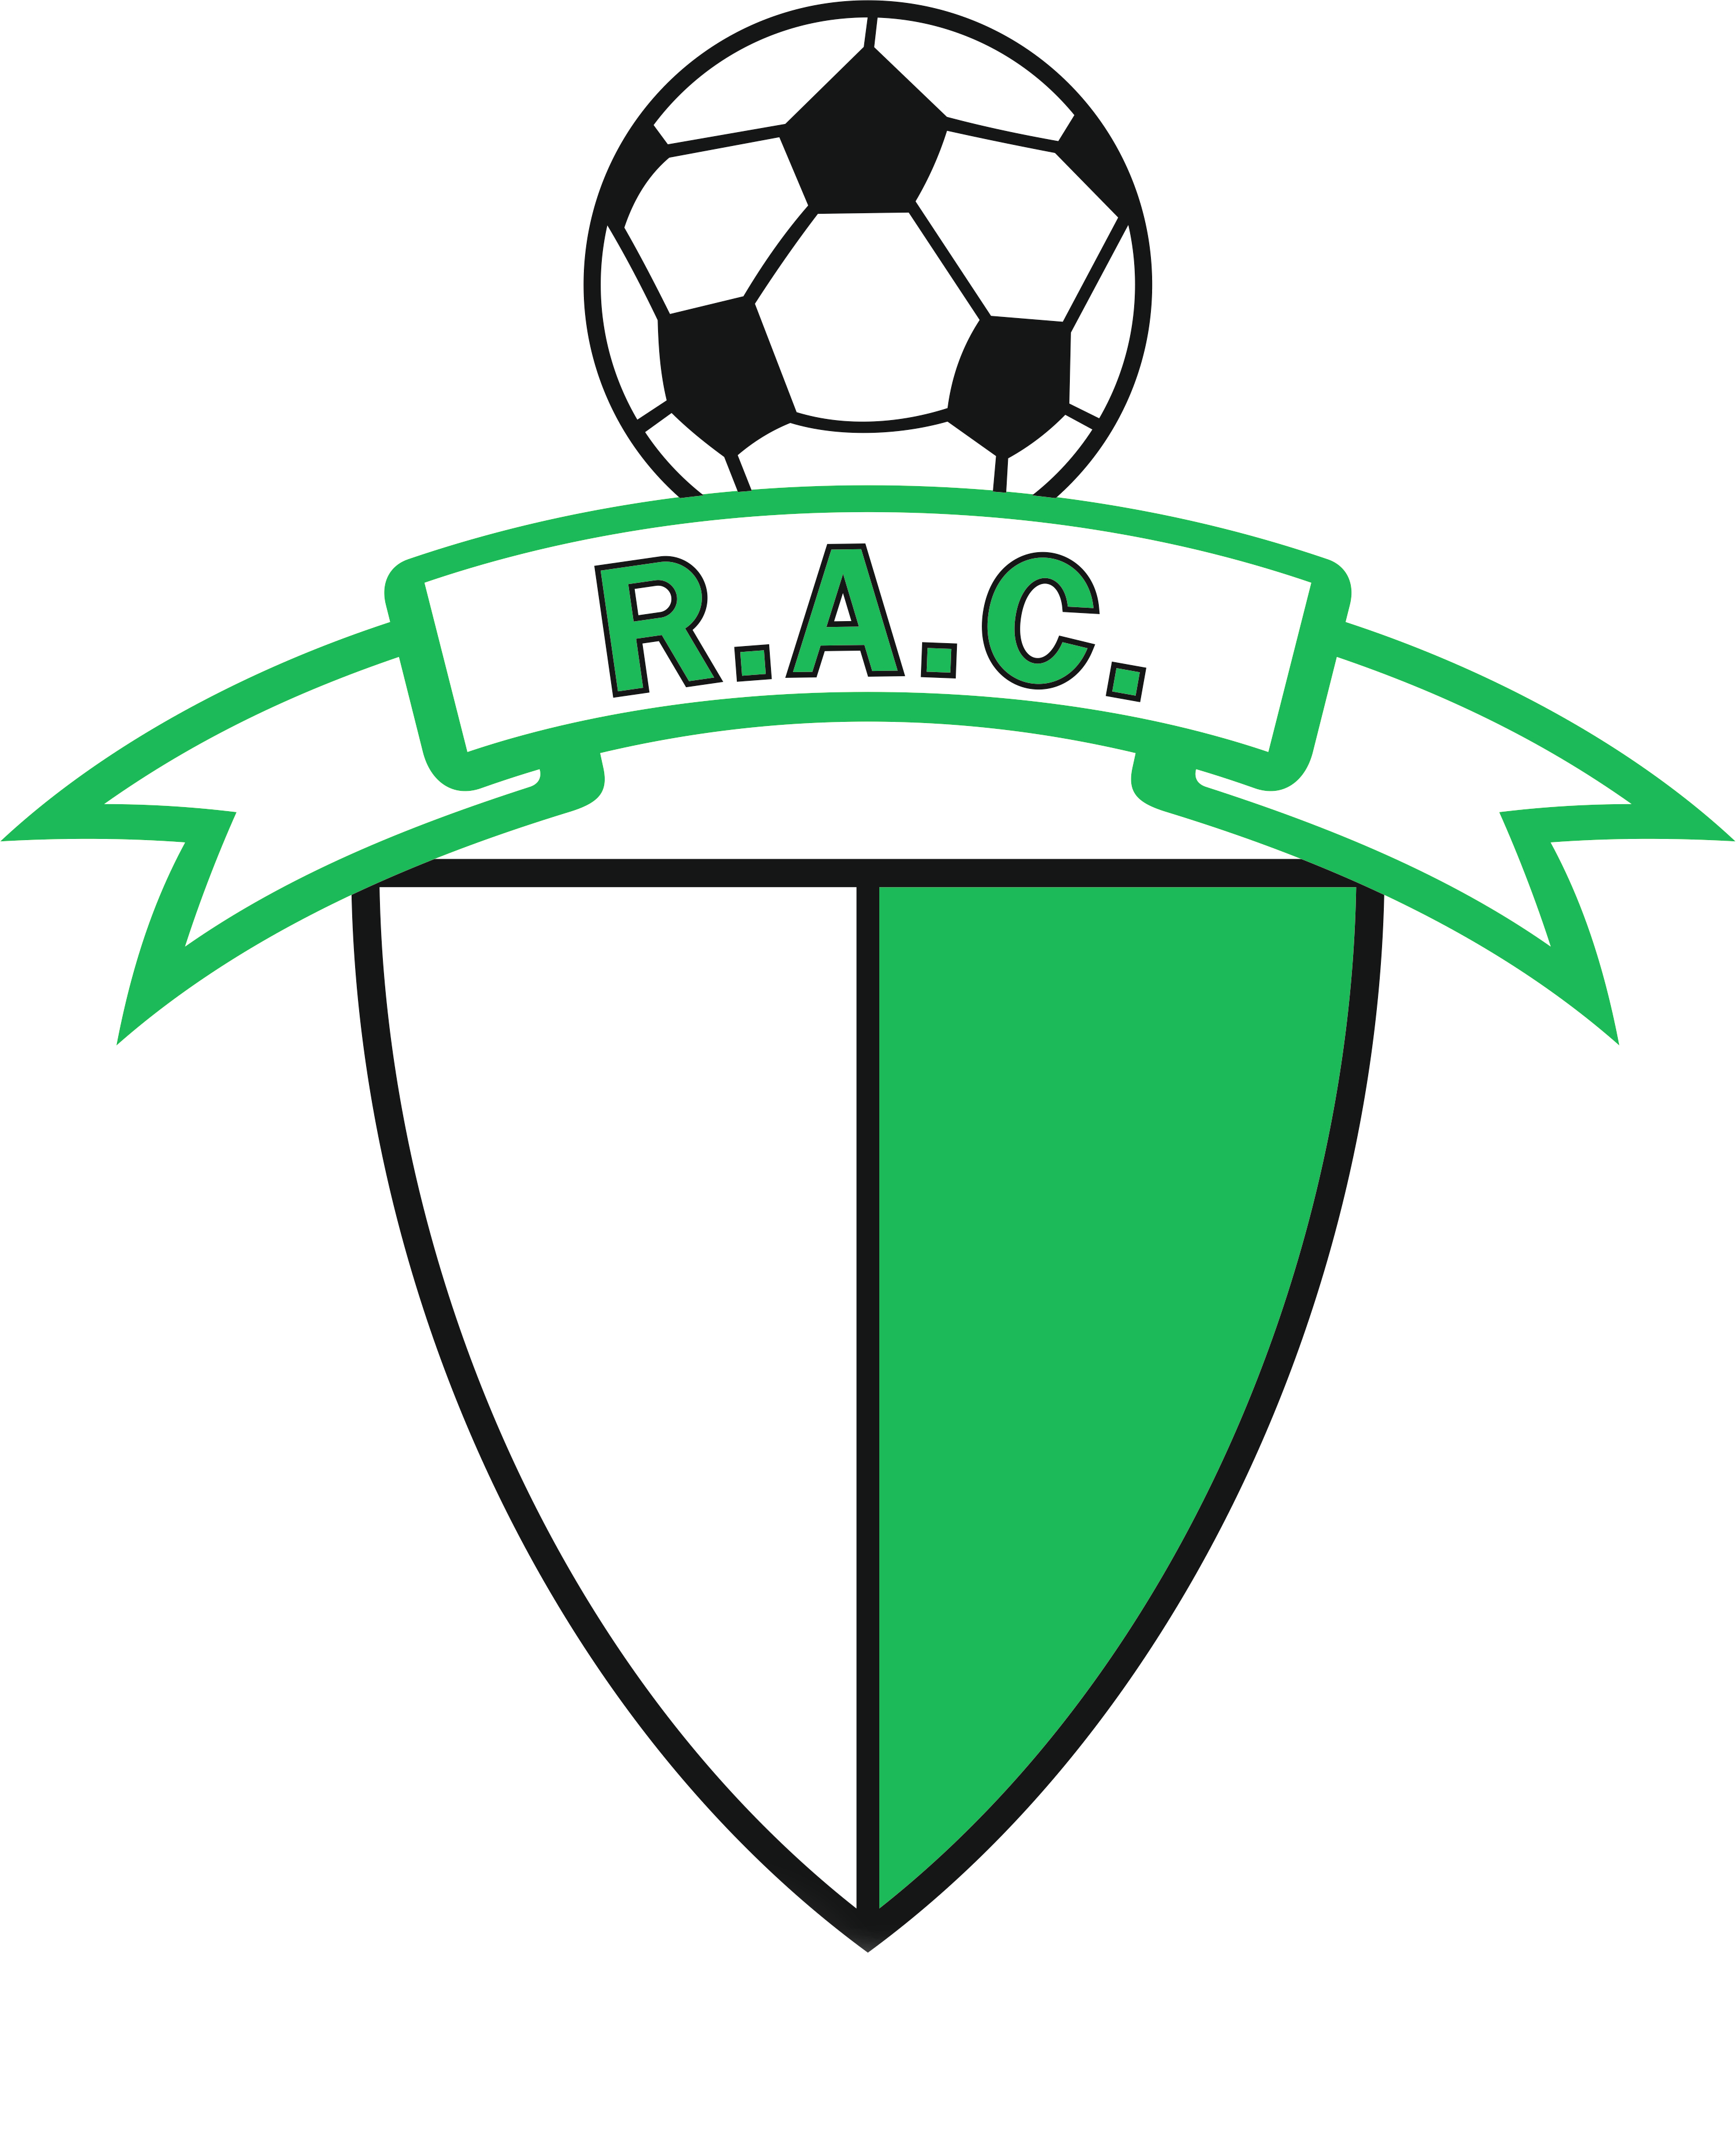 Ruivanense Atlético Club